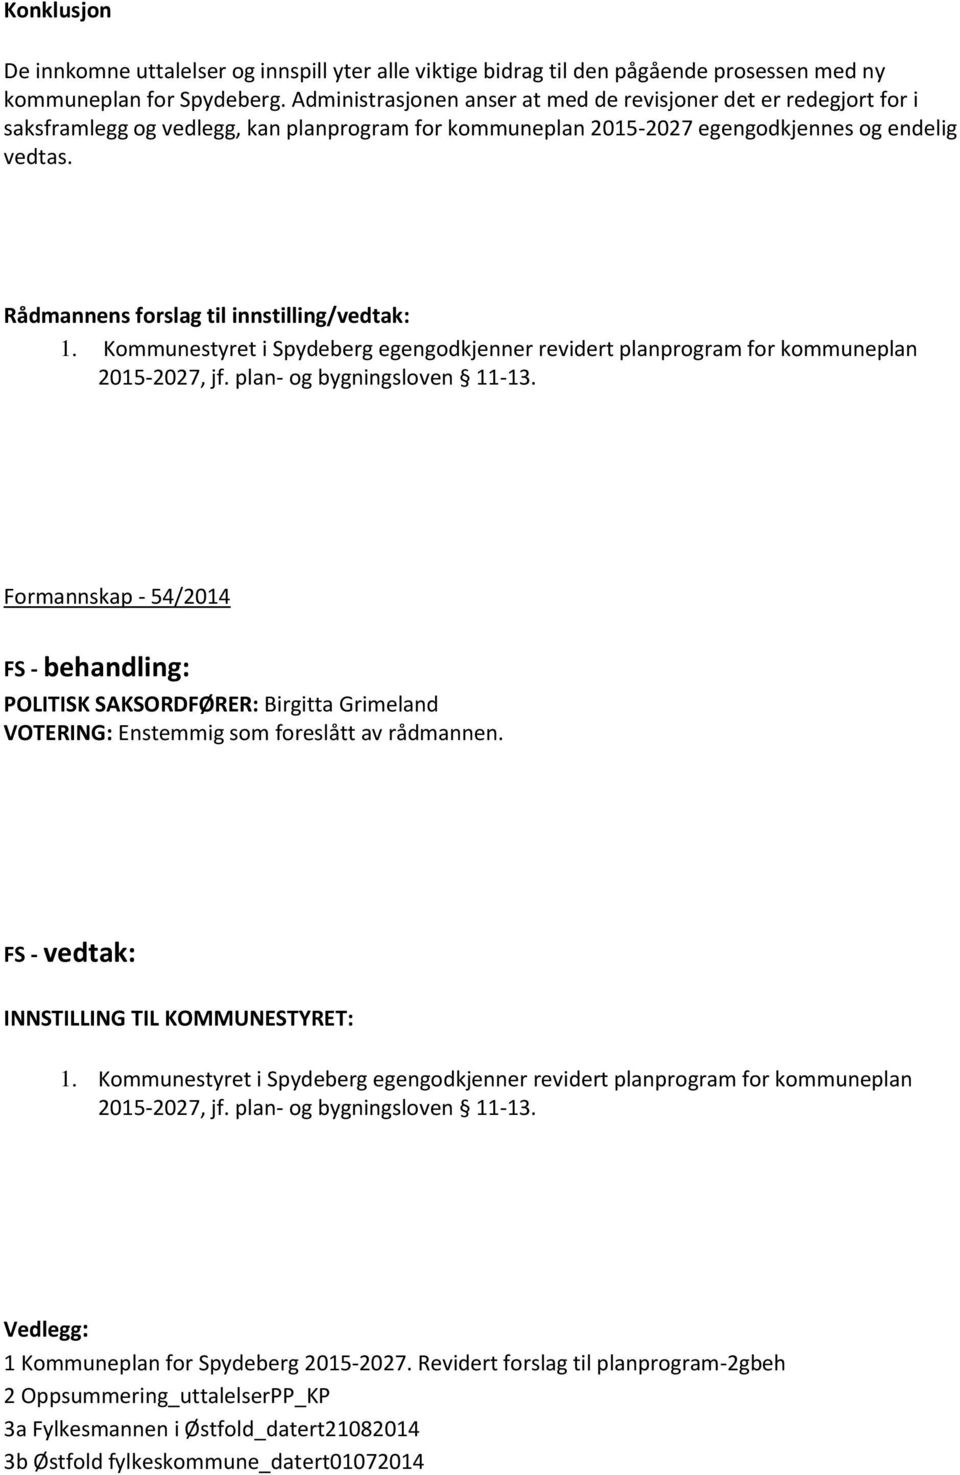 Rådmannens forslag til innstilling/vedtak: 1. Kommunestyret i Spydeberg egengodkjenner revidert planprogram for kommuneplan 2015-2027, jf. plan- og bygningsloven 11-13.